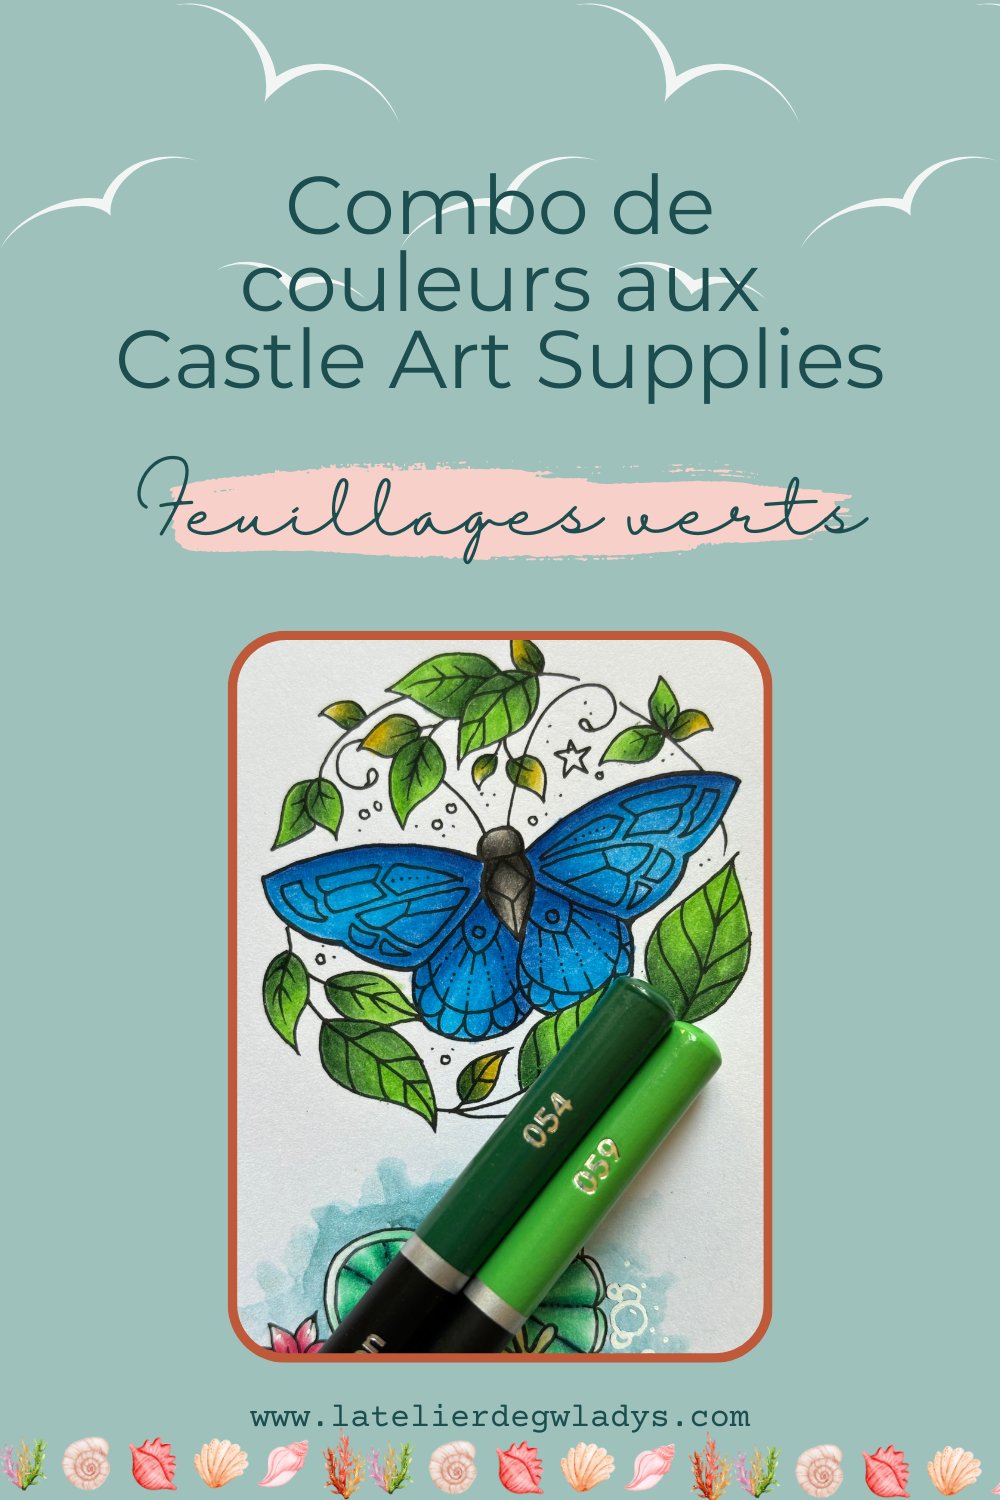 l-atelier-de-gwladys-combo-couleurs-castle-art-supplies-papillon-feuillages-verts-2.png